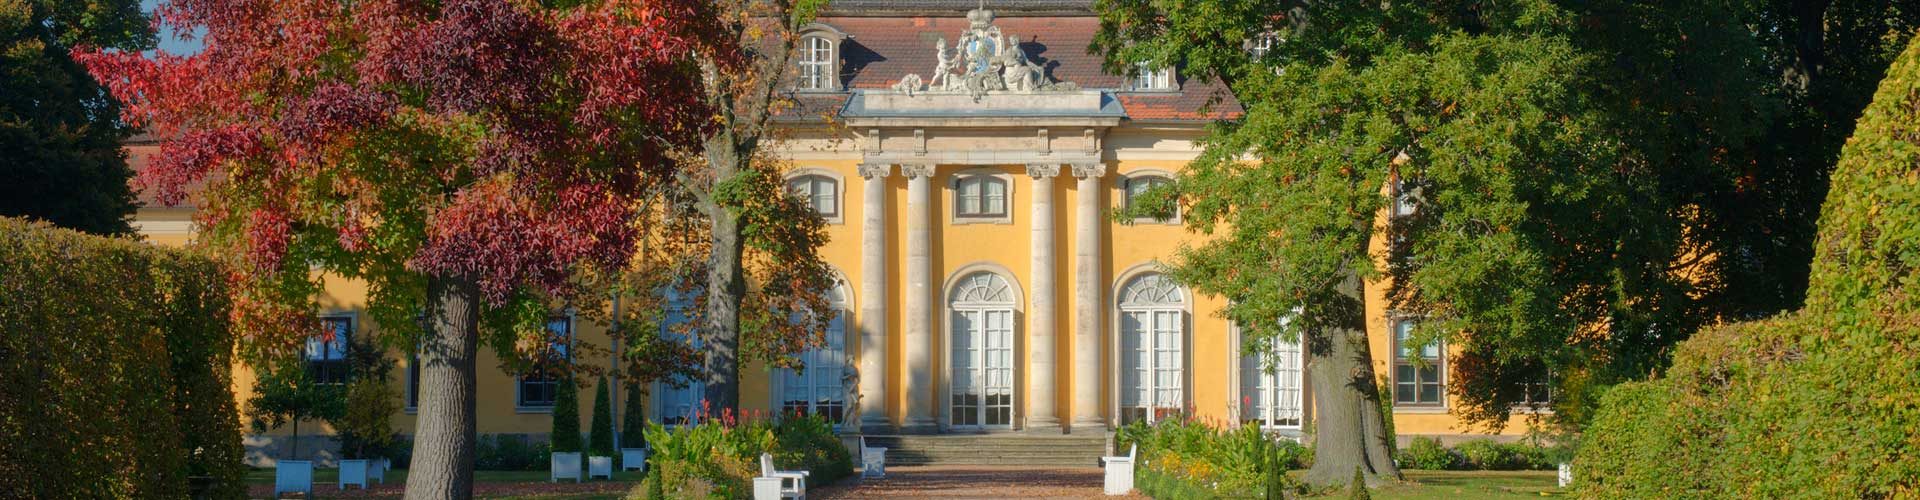 Dessau-Mosigkau, das kleine Barockschloss